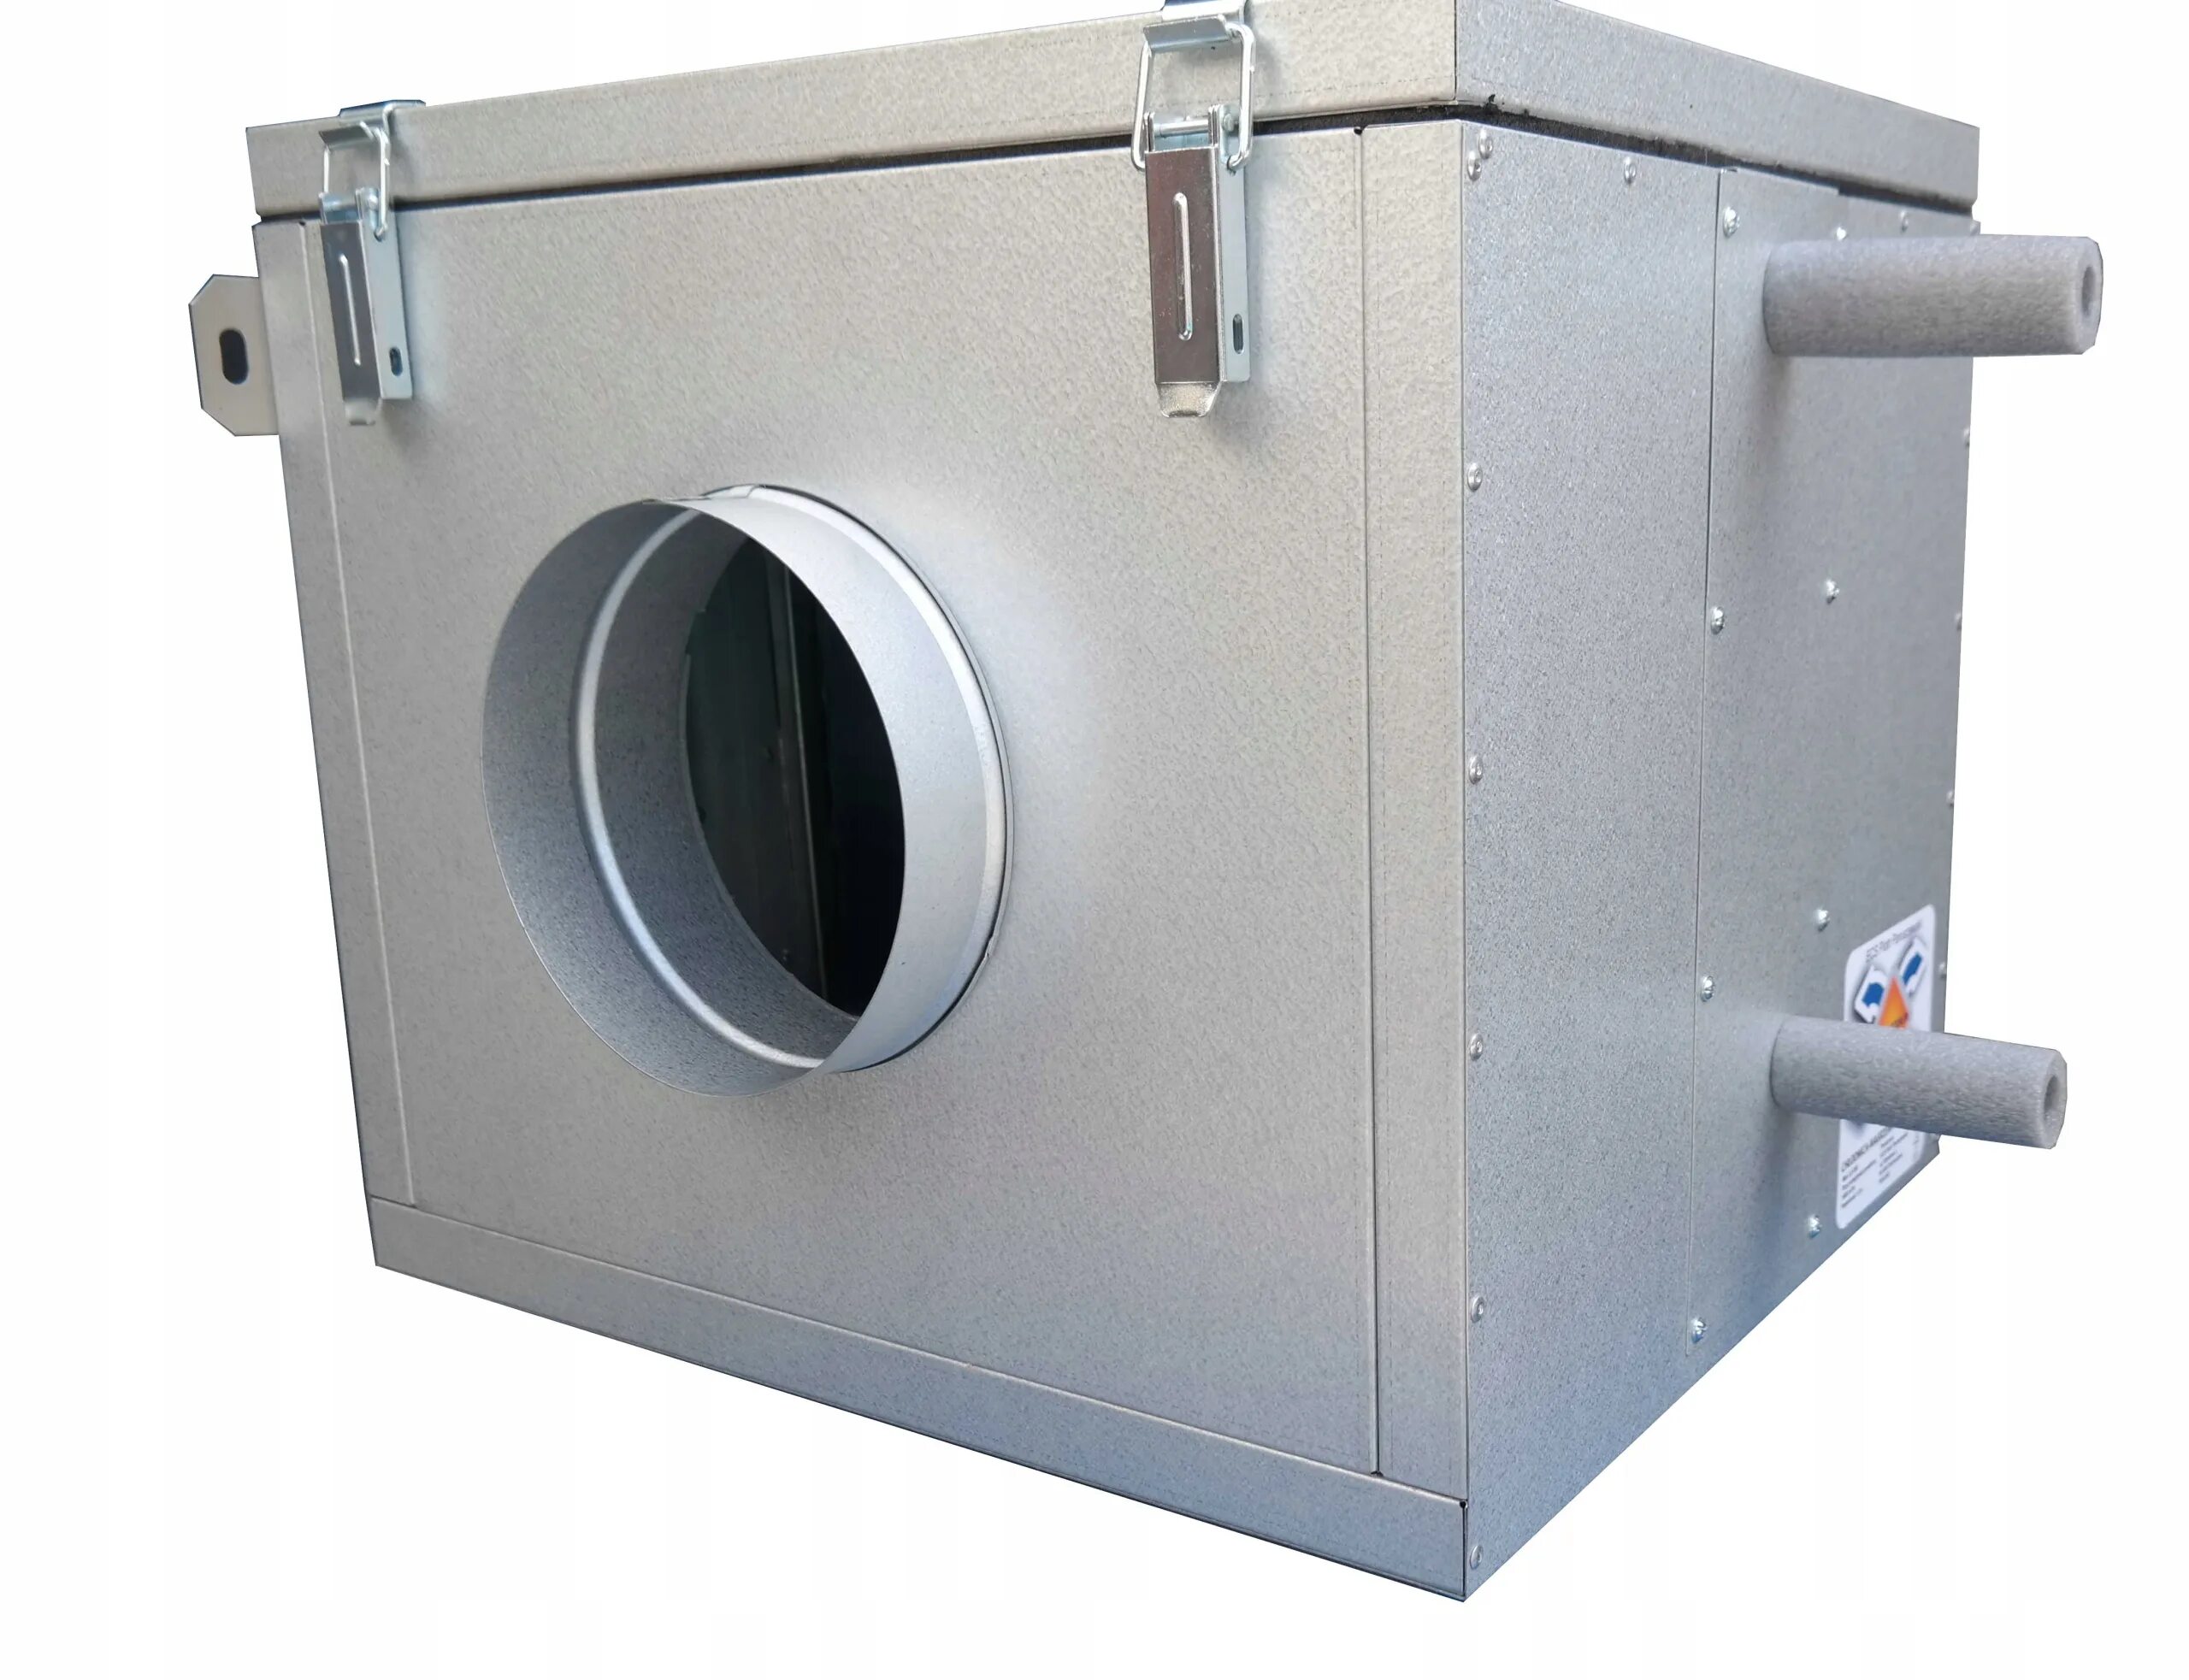 Канальный охладитель. Канальный охладитель (испаритель) New cool-Box i 250-1000 5,0 КВТ. Фреоновый охладитель для круглых каналов 100мм. Канальный воздухоохладитель. Канальный охладитель для круглых воздуховодов.